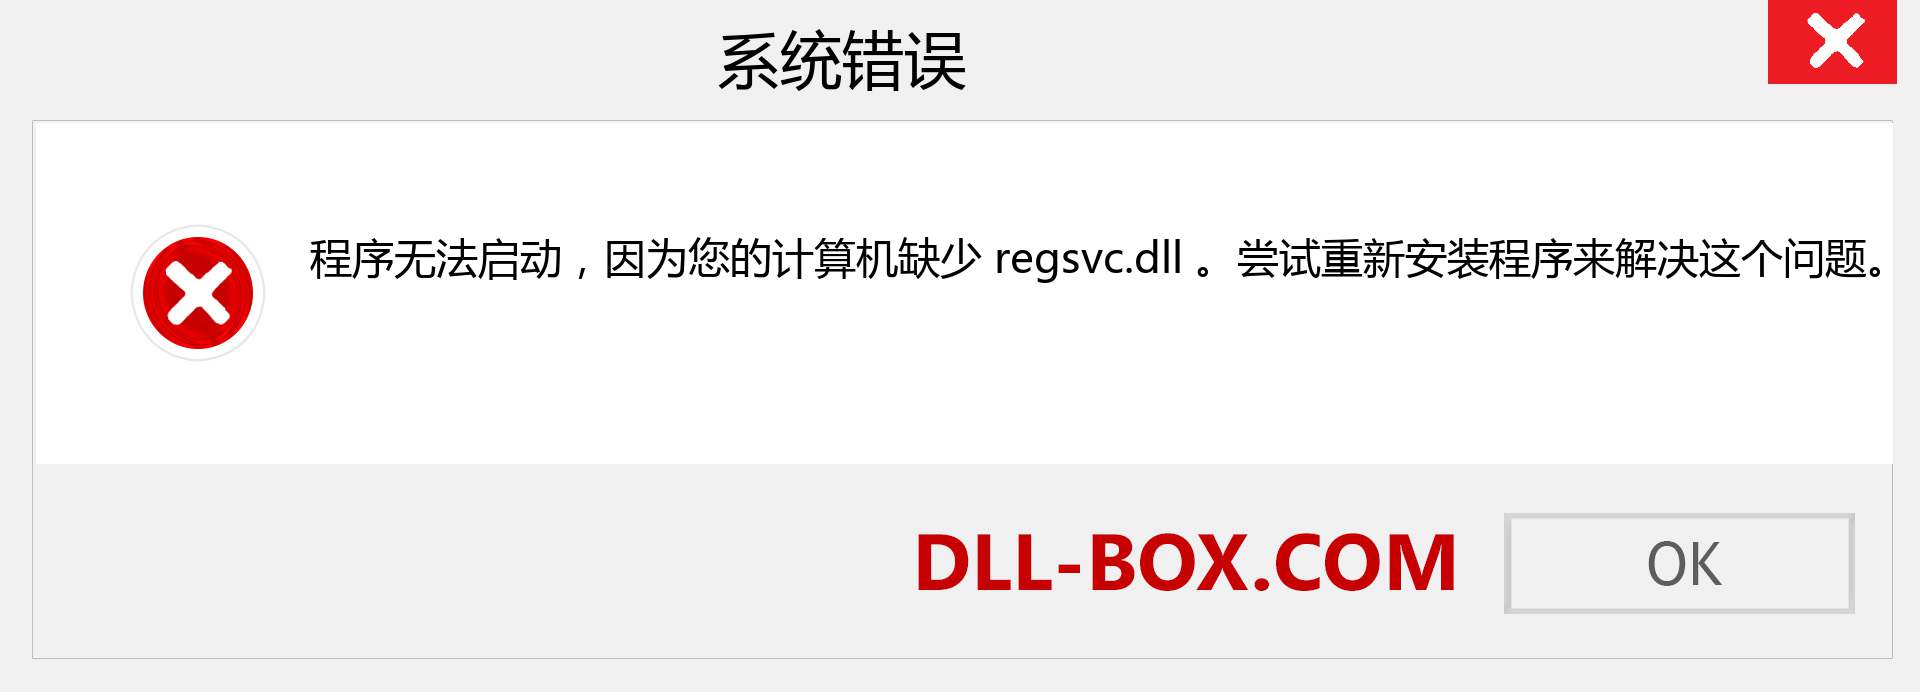 regsvc.dll 文件丢失？。 适用于 Windows 7、8、10 的下载 - 修复 Windows、照片、图像上的 regsvc dll 丢失错误